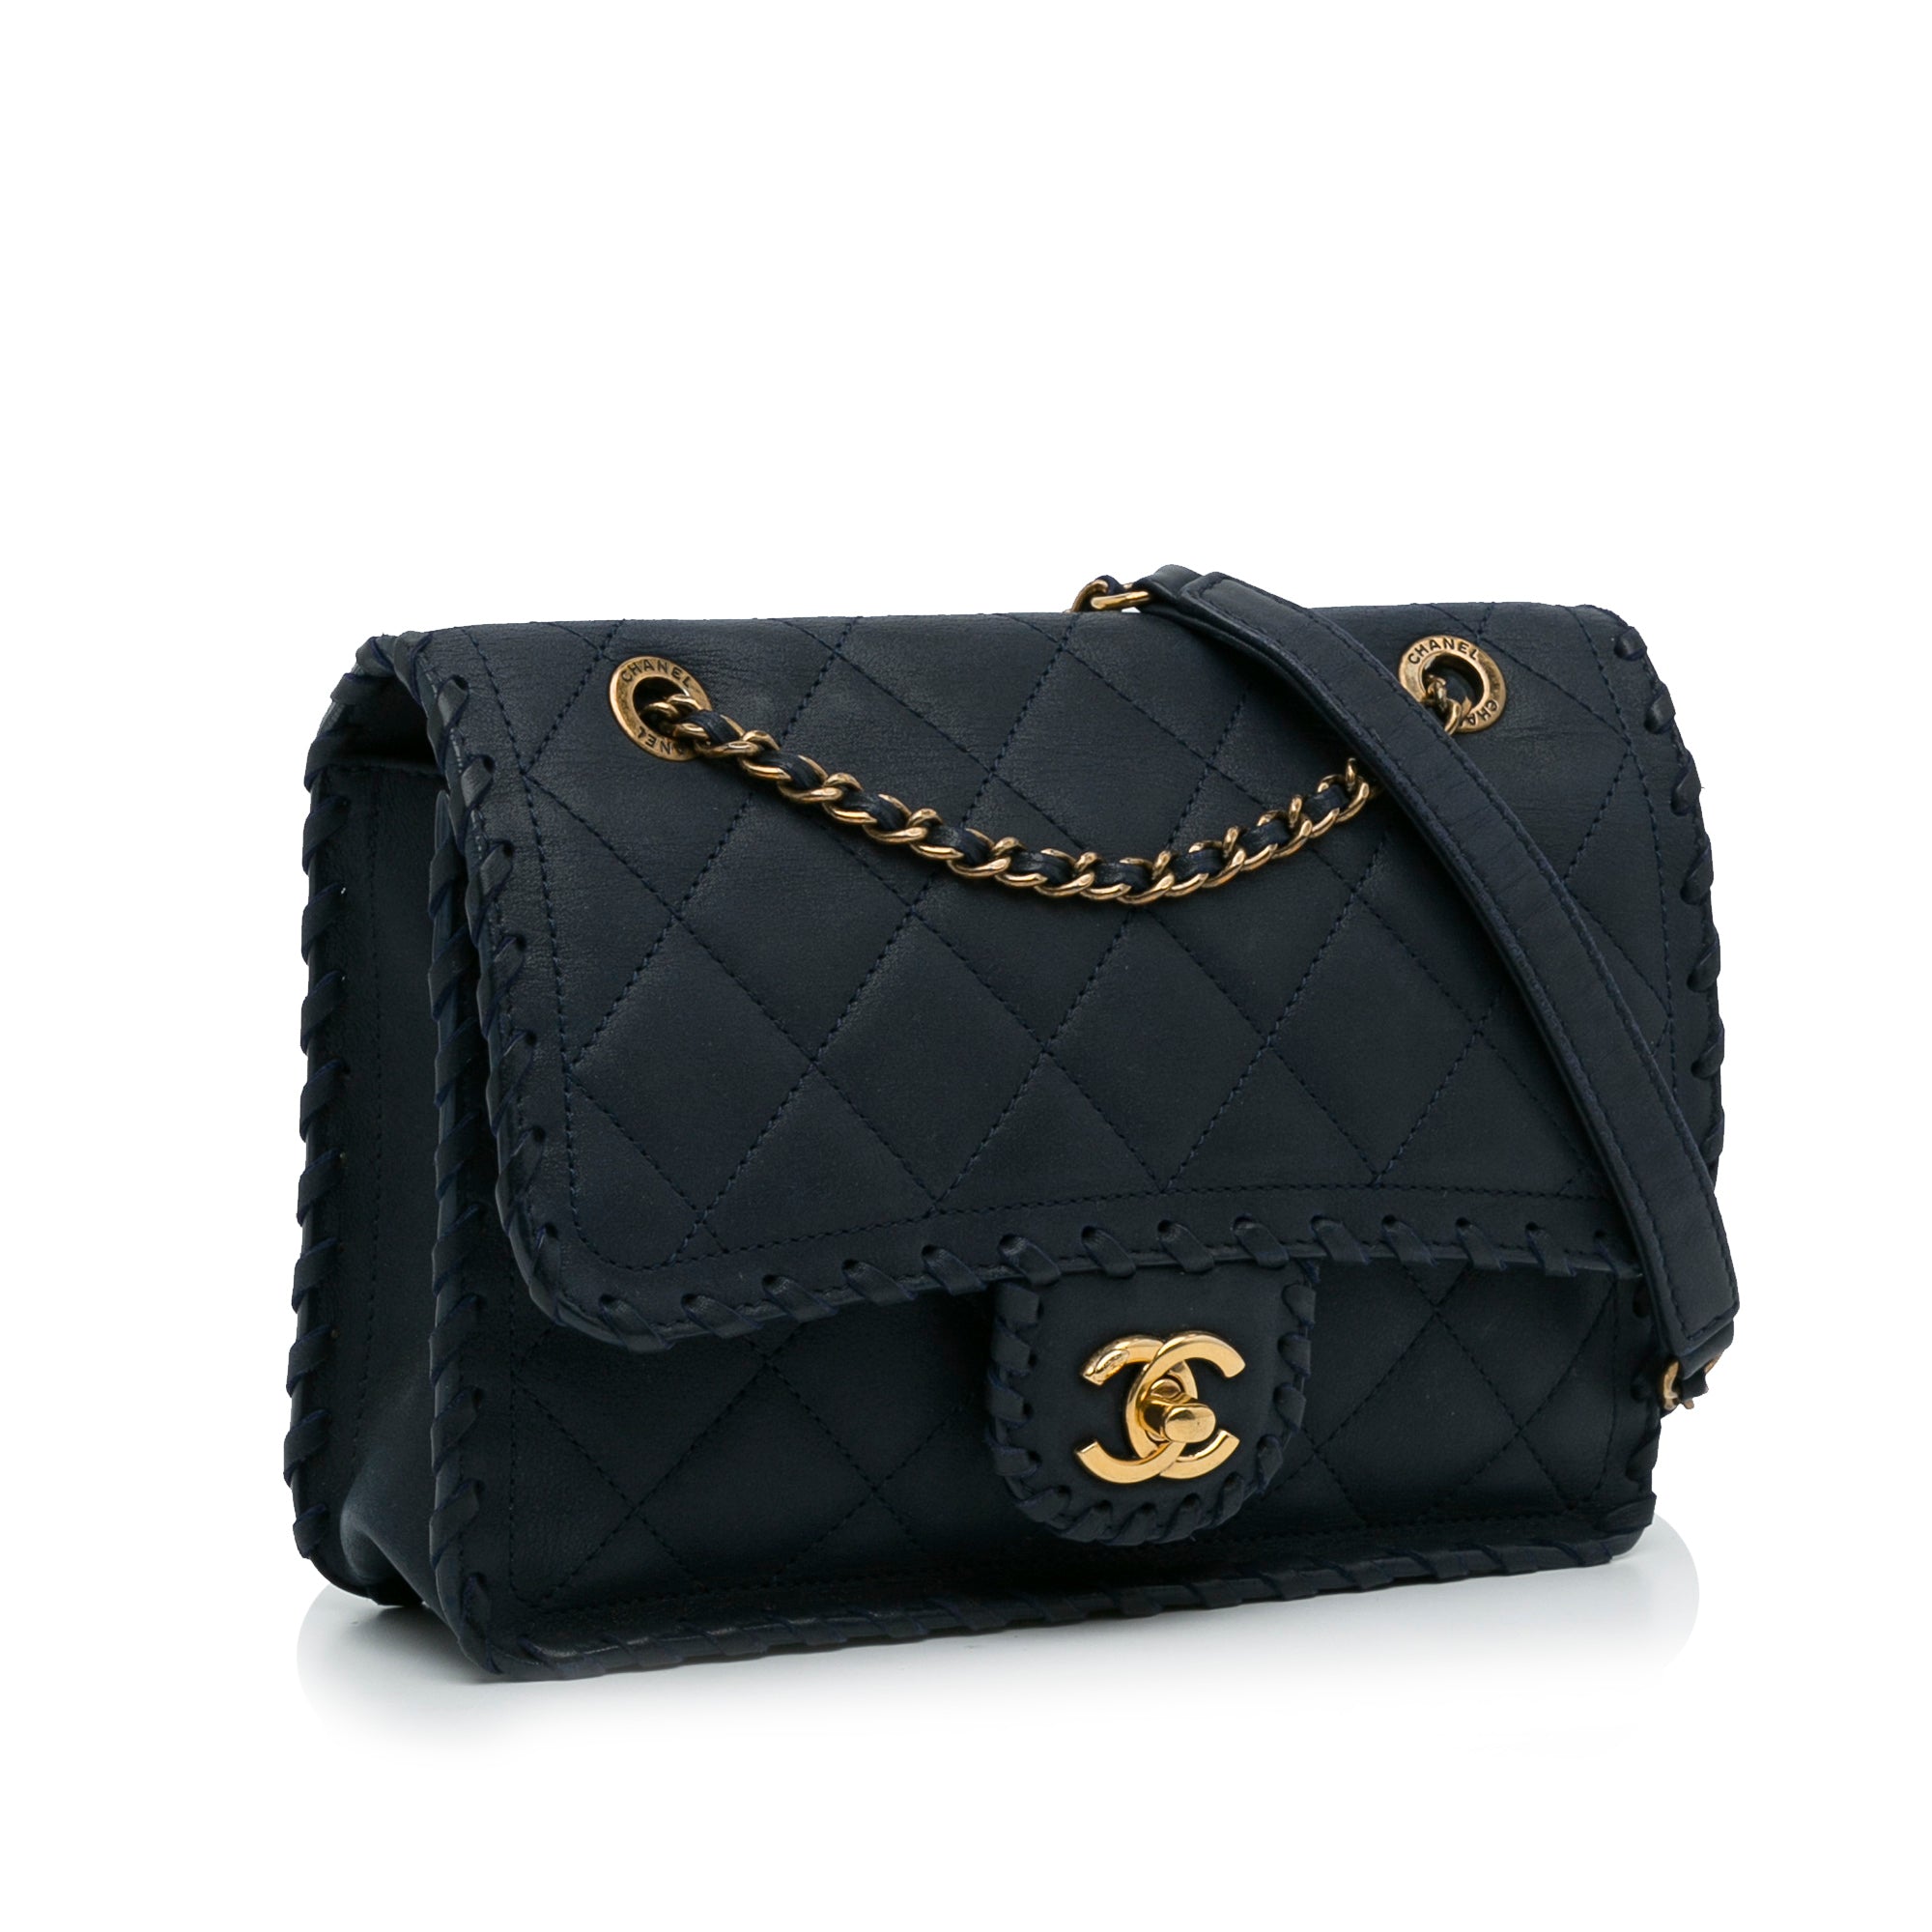 Blue Chanel Happy Stitch Flap Bag